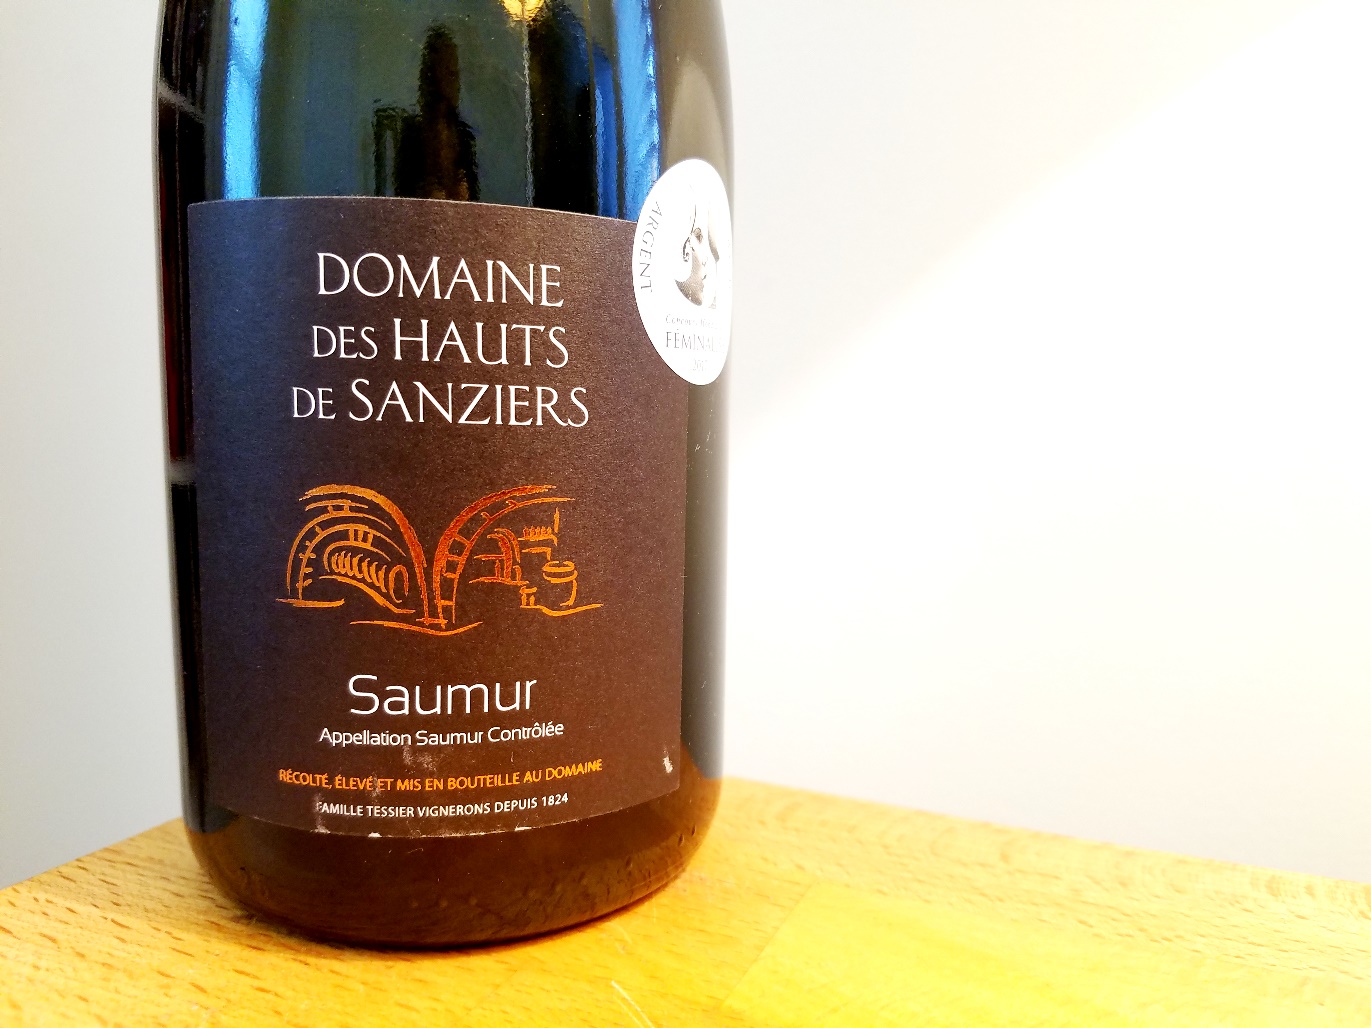 Domaine des Hauts de Sanziers, Saumur 2016, Loire, France, Wine Casual